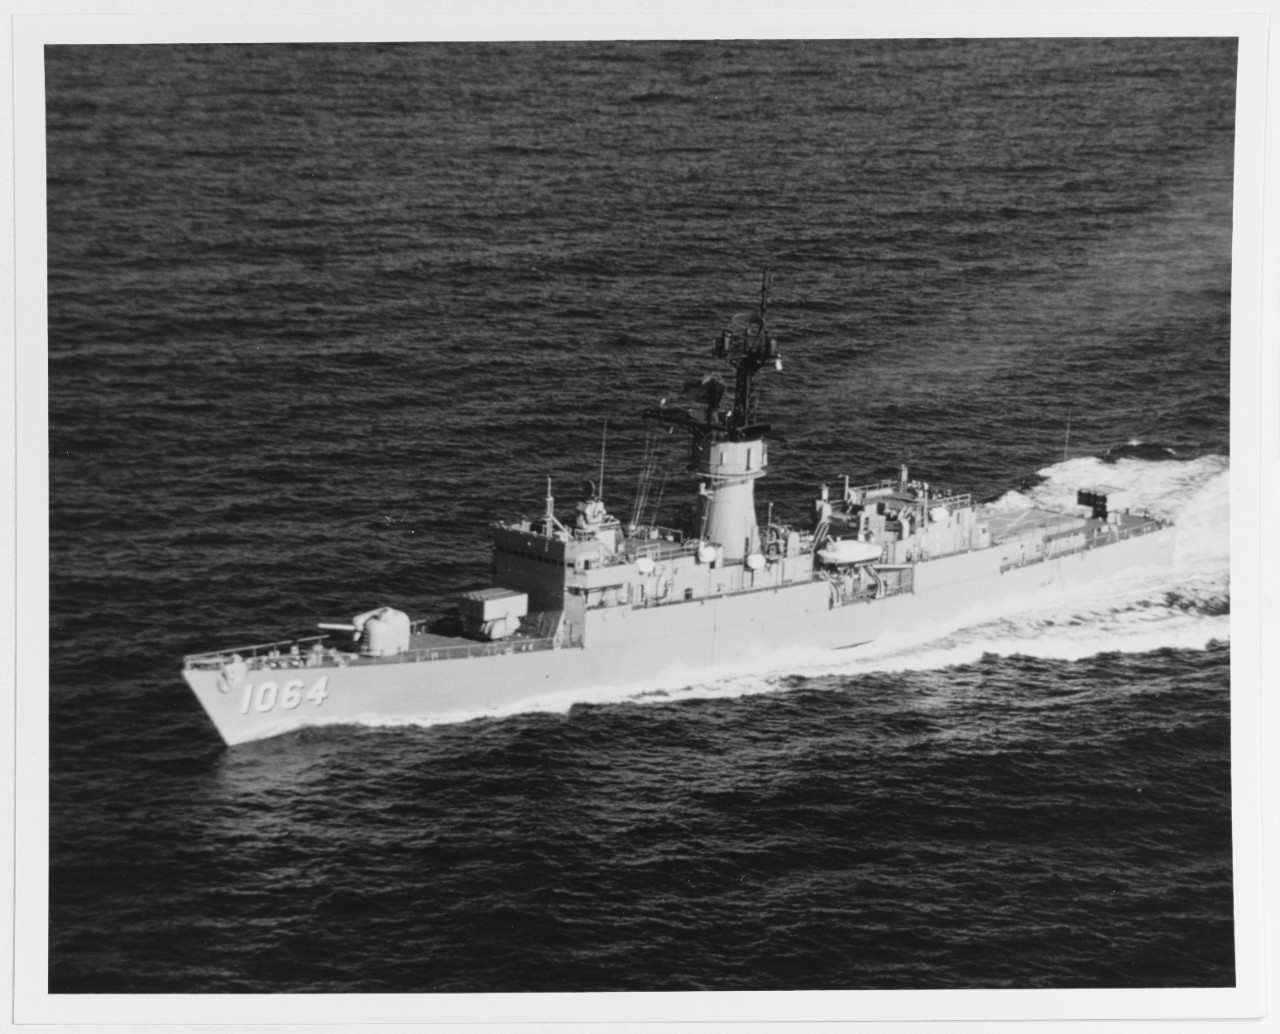 USS LOCKWOOD (DE-1064)